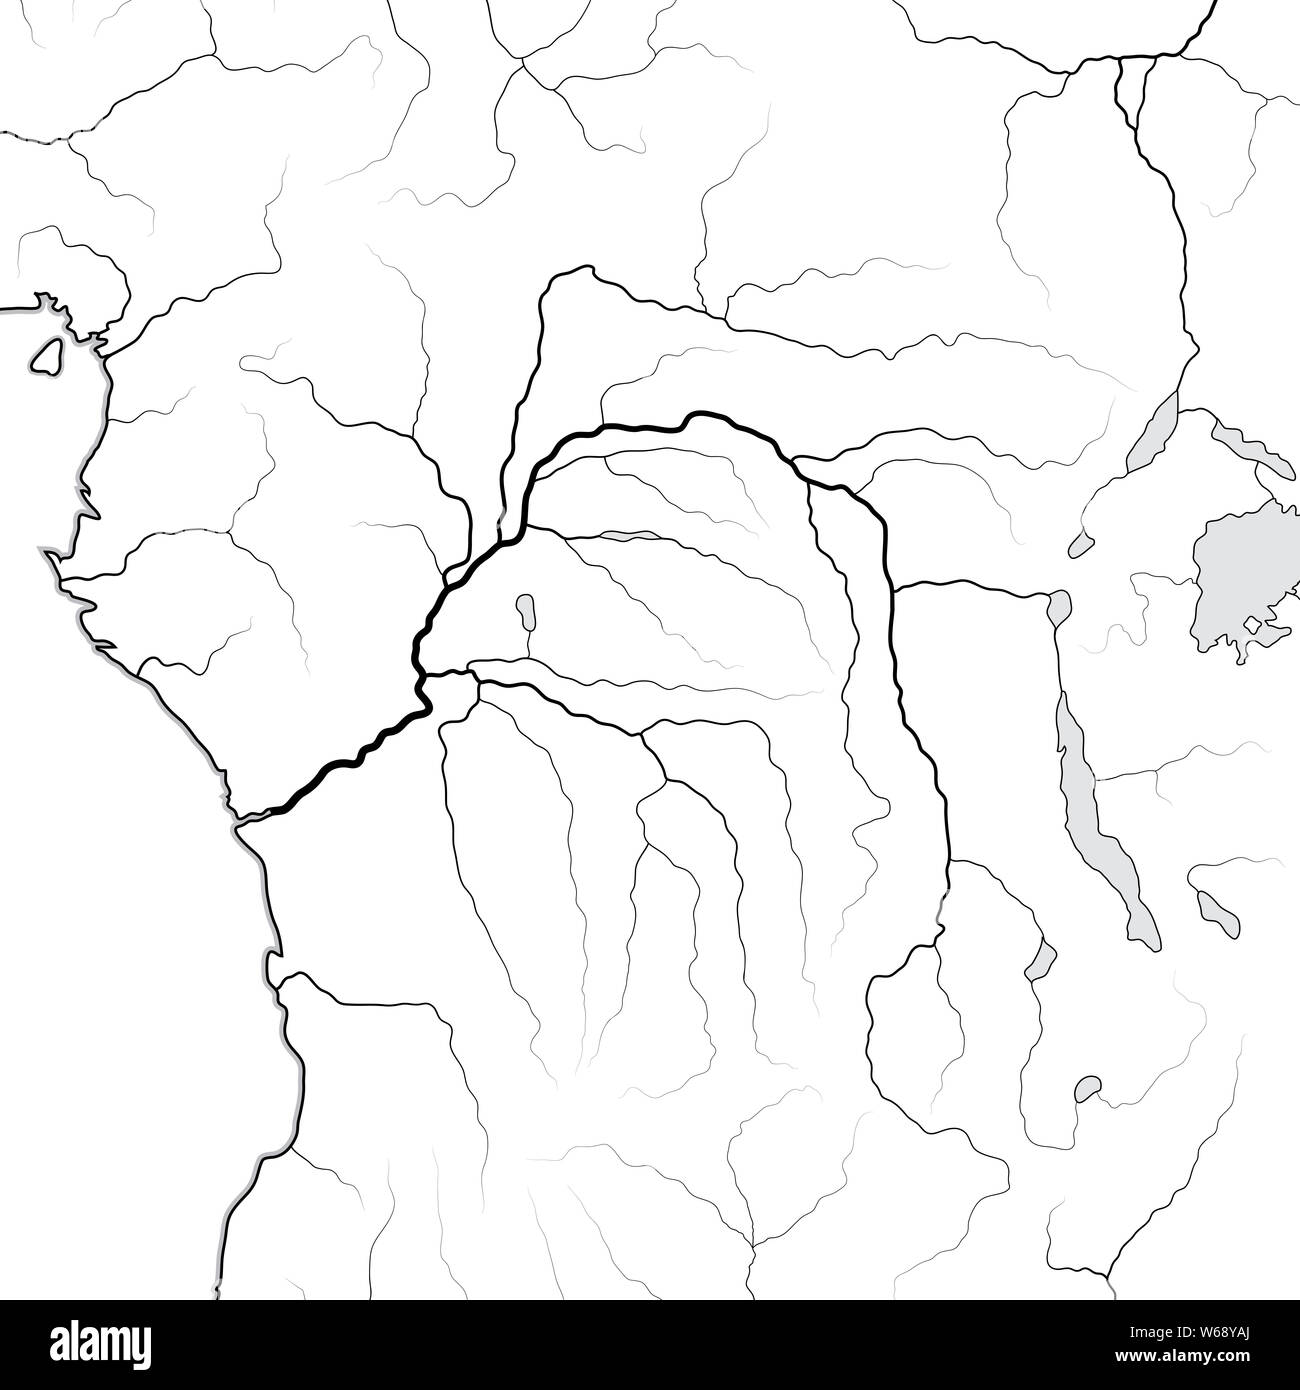 Mappa mondiale del bacino del fiume Congo: Africa equatoriale, Africa centrale, Congo, Kongo, Zaire. Grafico geografica con coste & principali affluenti del fiume. Foto Stock